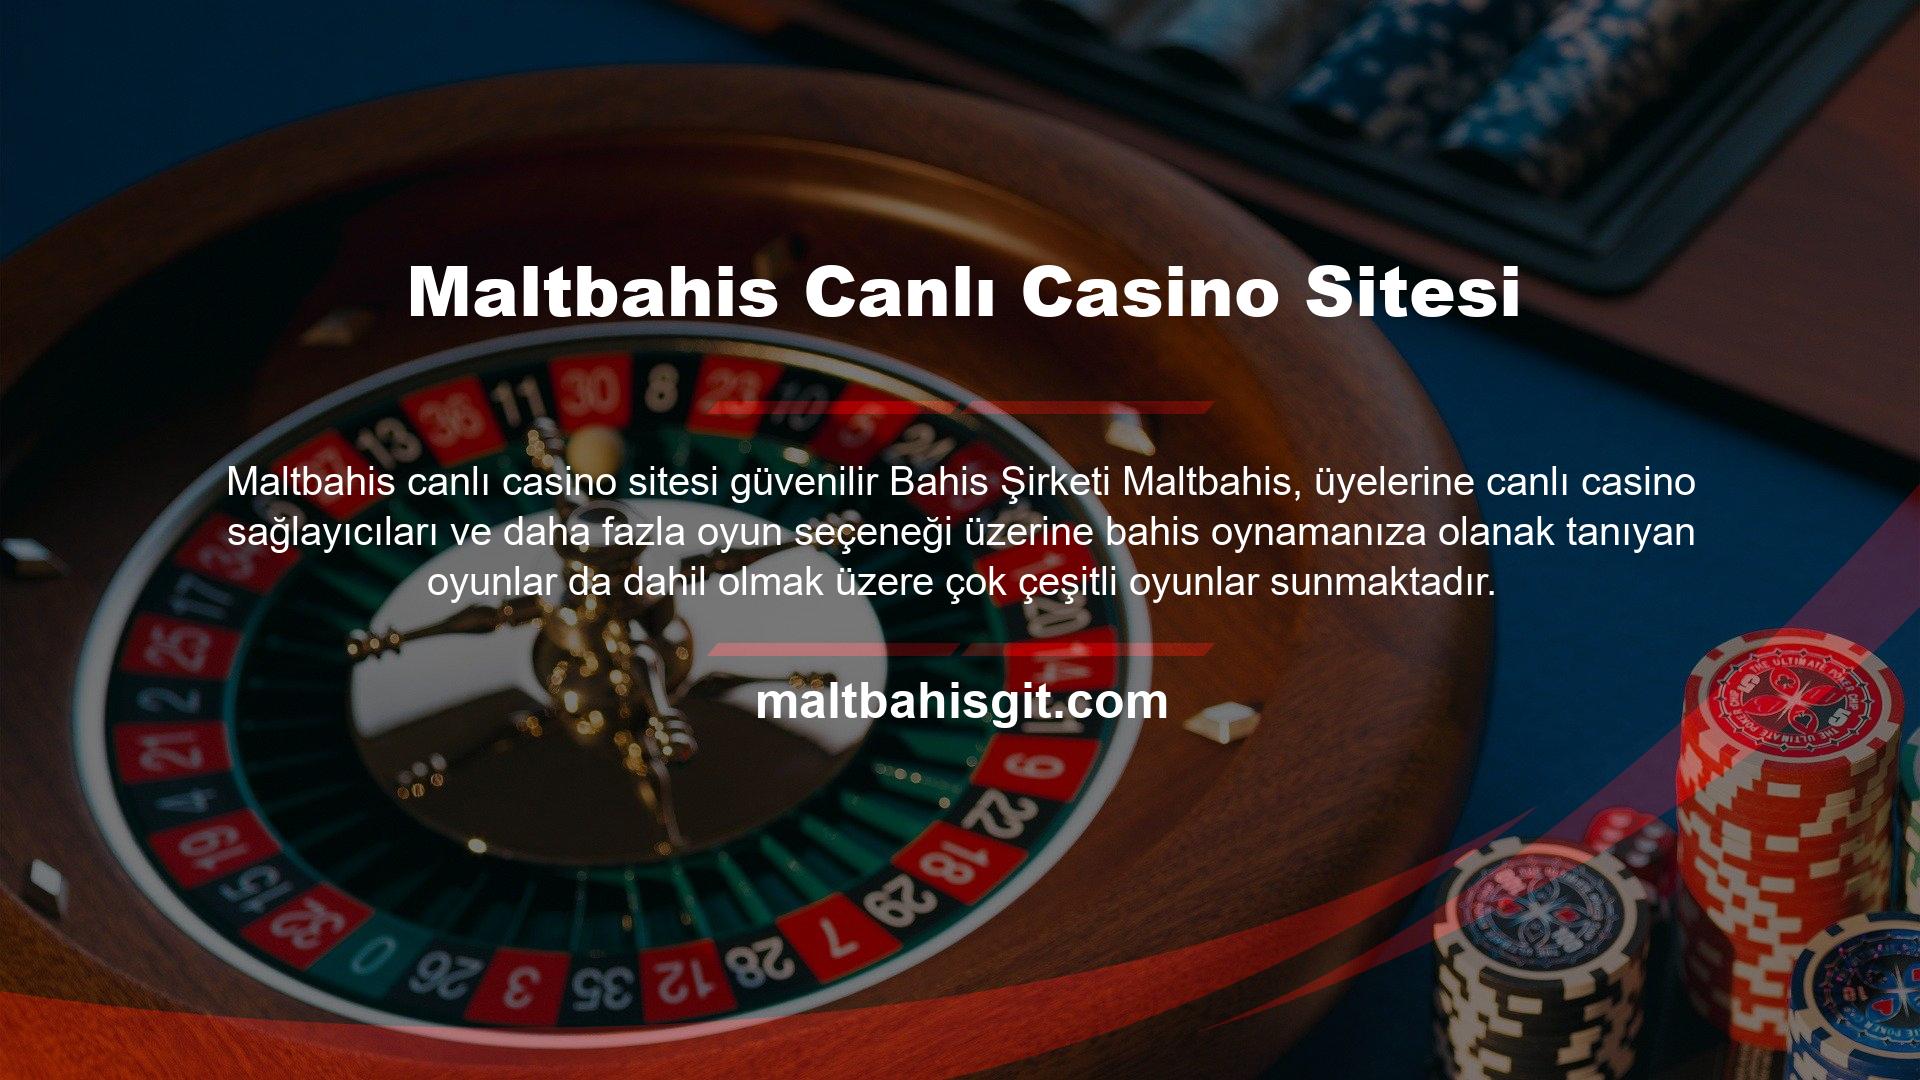 Şirket, çeşitli canlı casino sağlayıcılarına ev sahipliği yapmakta ve lisanslı oyunlar oynamaktadır